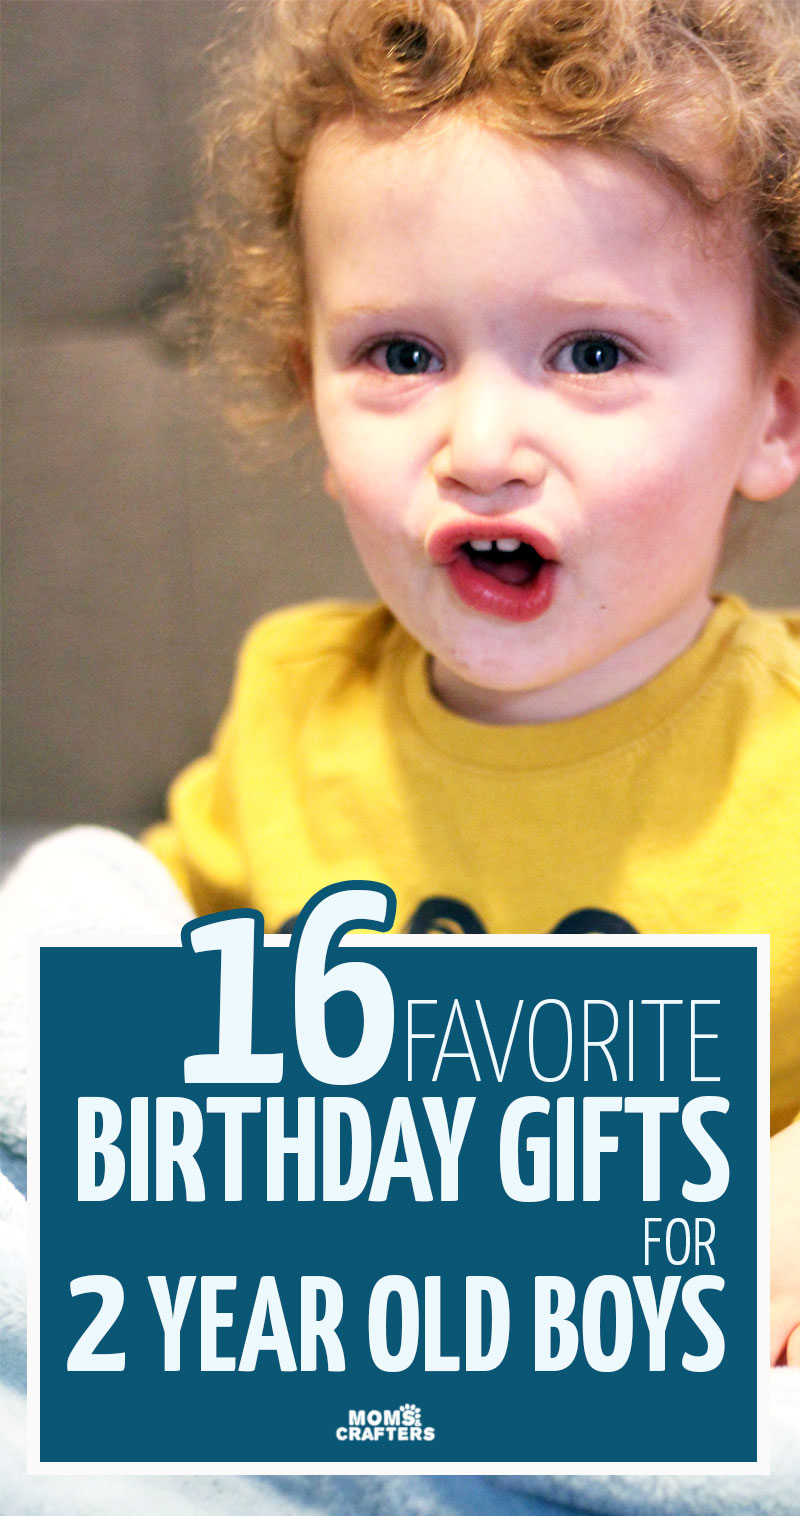 Baby Boy Gifts Online - Best Gift Ideas for Newborn Baby Boy